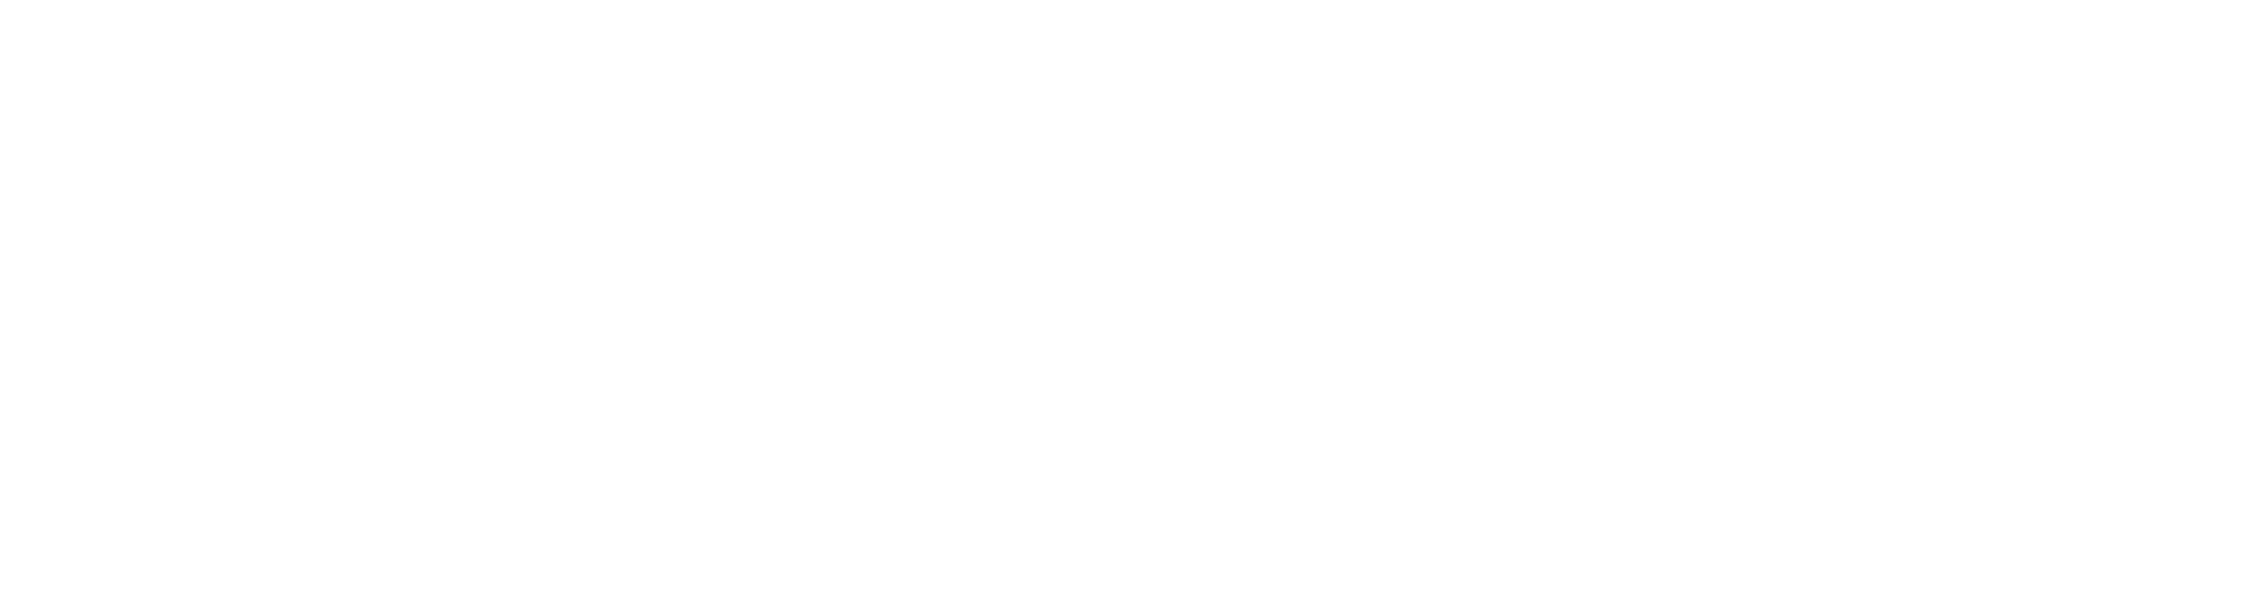 Logo Spas Supplies